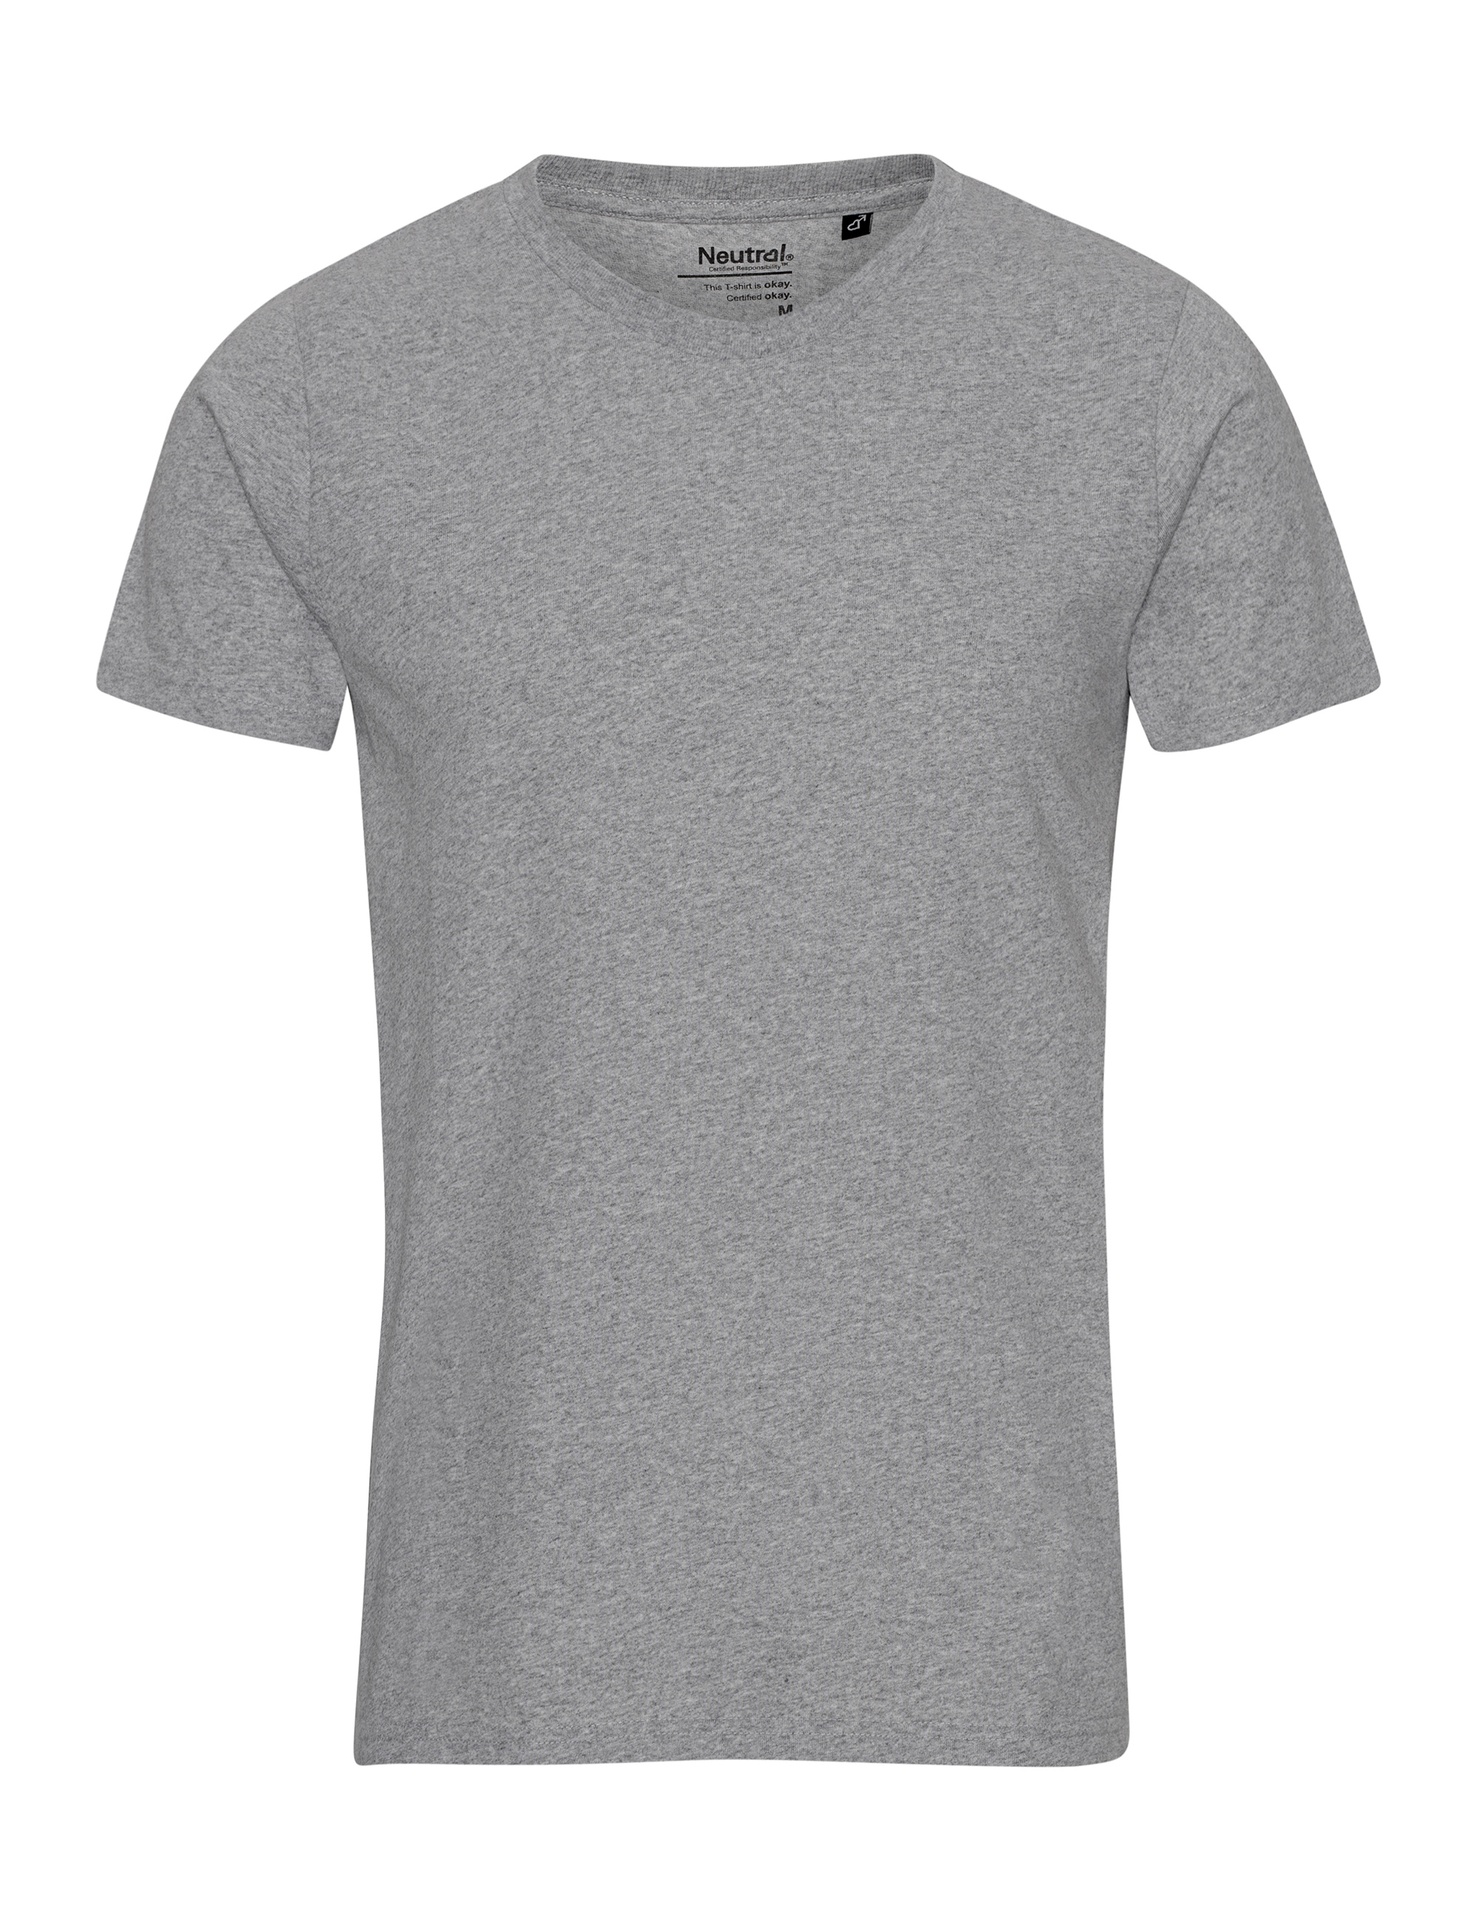 [PR/01040] Recycled Cotton T-Shirt (Grey Melange 23, XS)